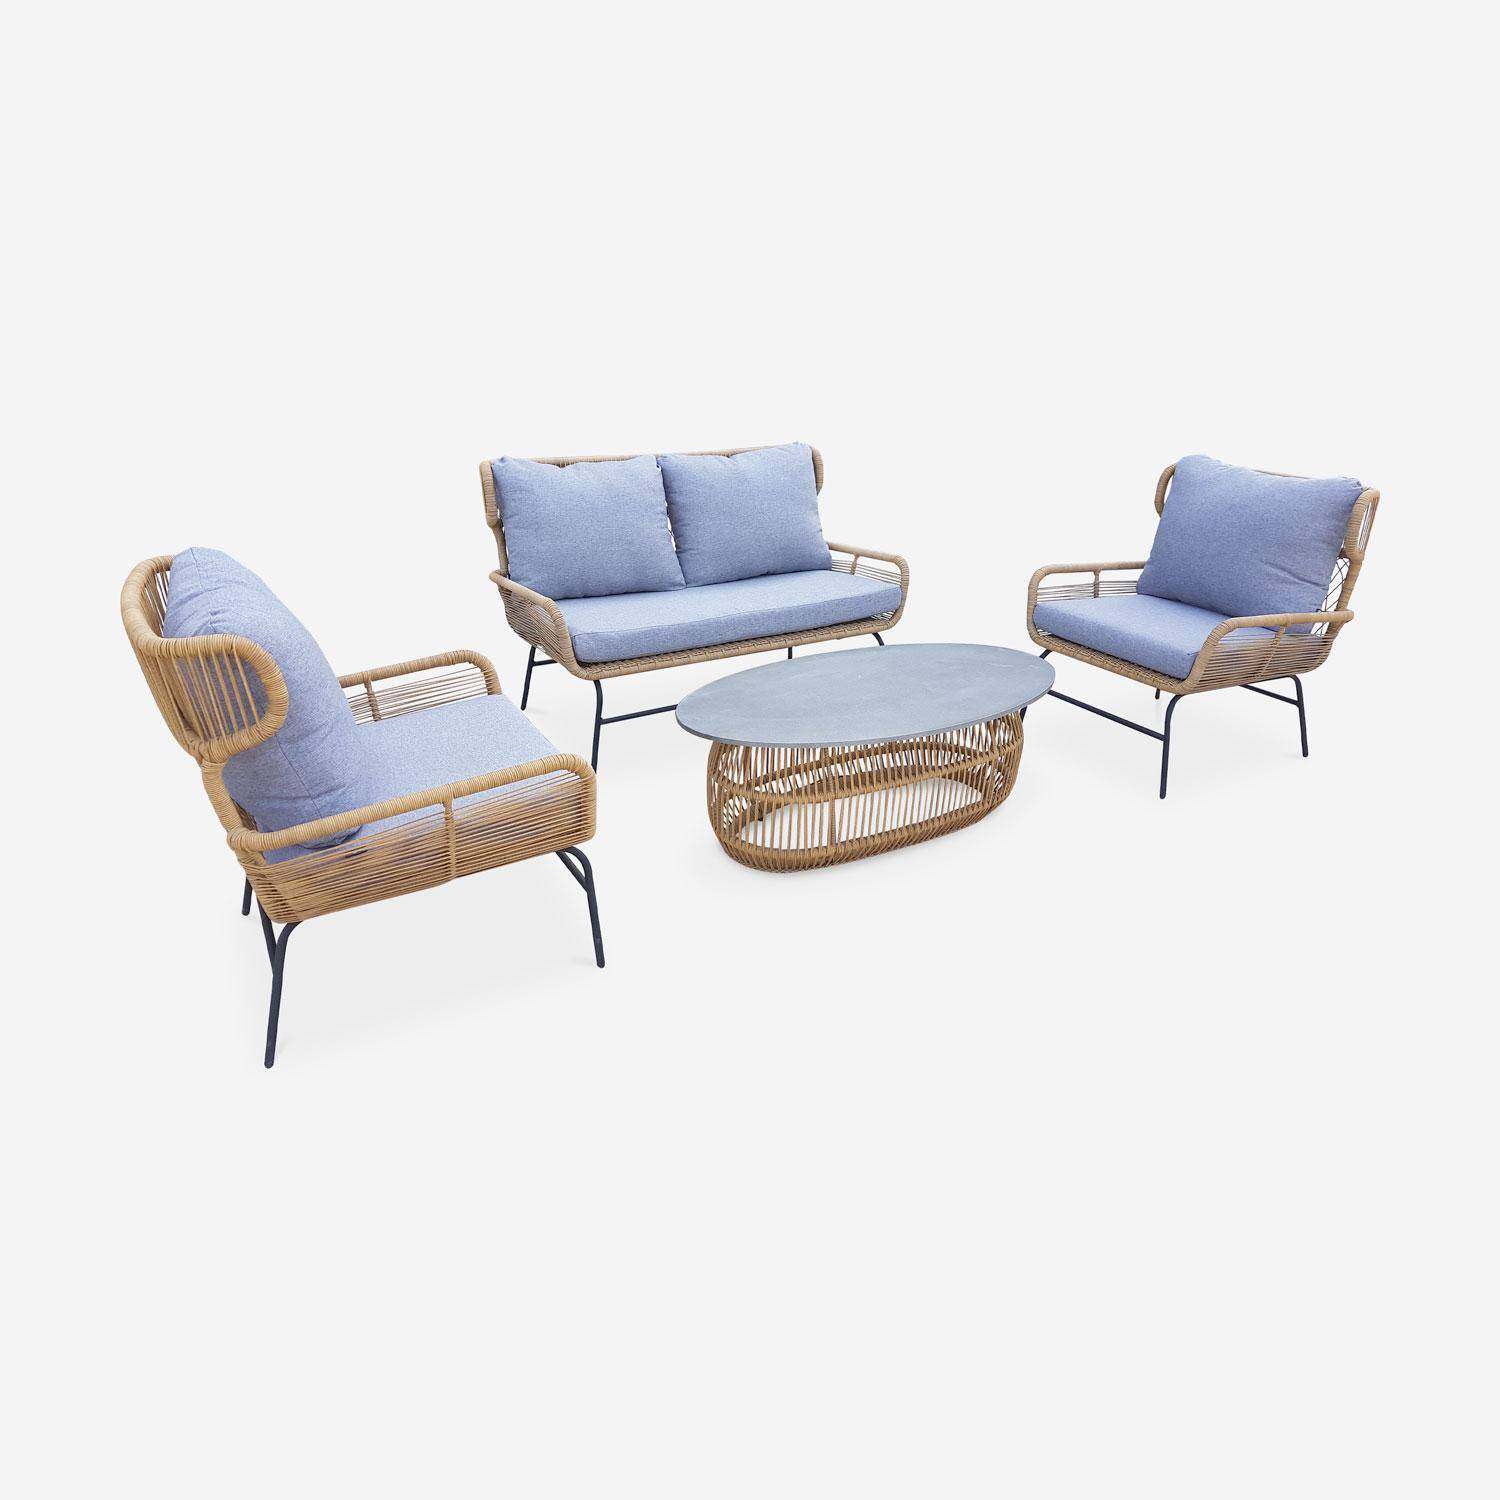 4-zits loungeset BALI - 2-zits bankstel en 2 fauteuils met 1 bijzettafel - Geweven rotan-effect wicker - Lichtgrijs gespikkeld  Photo2